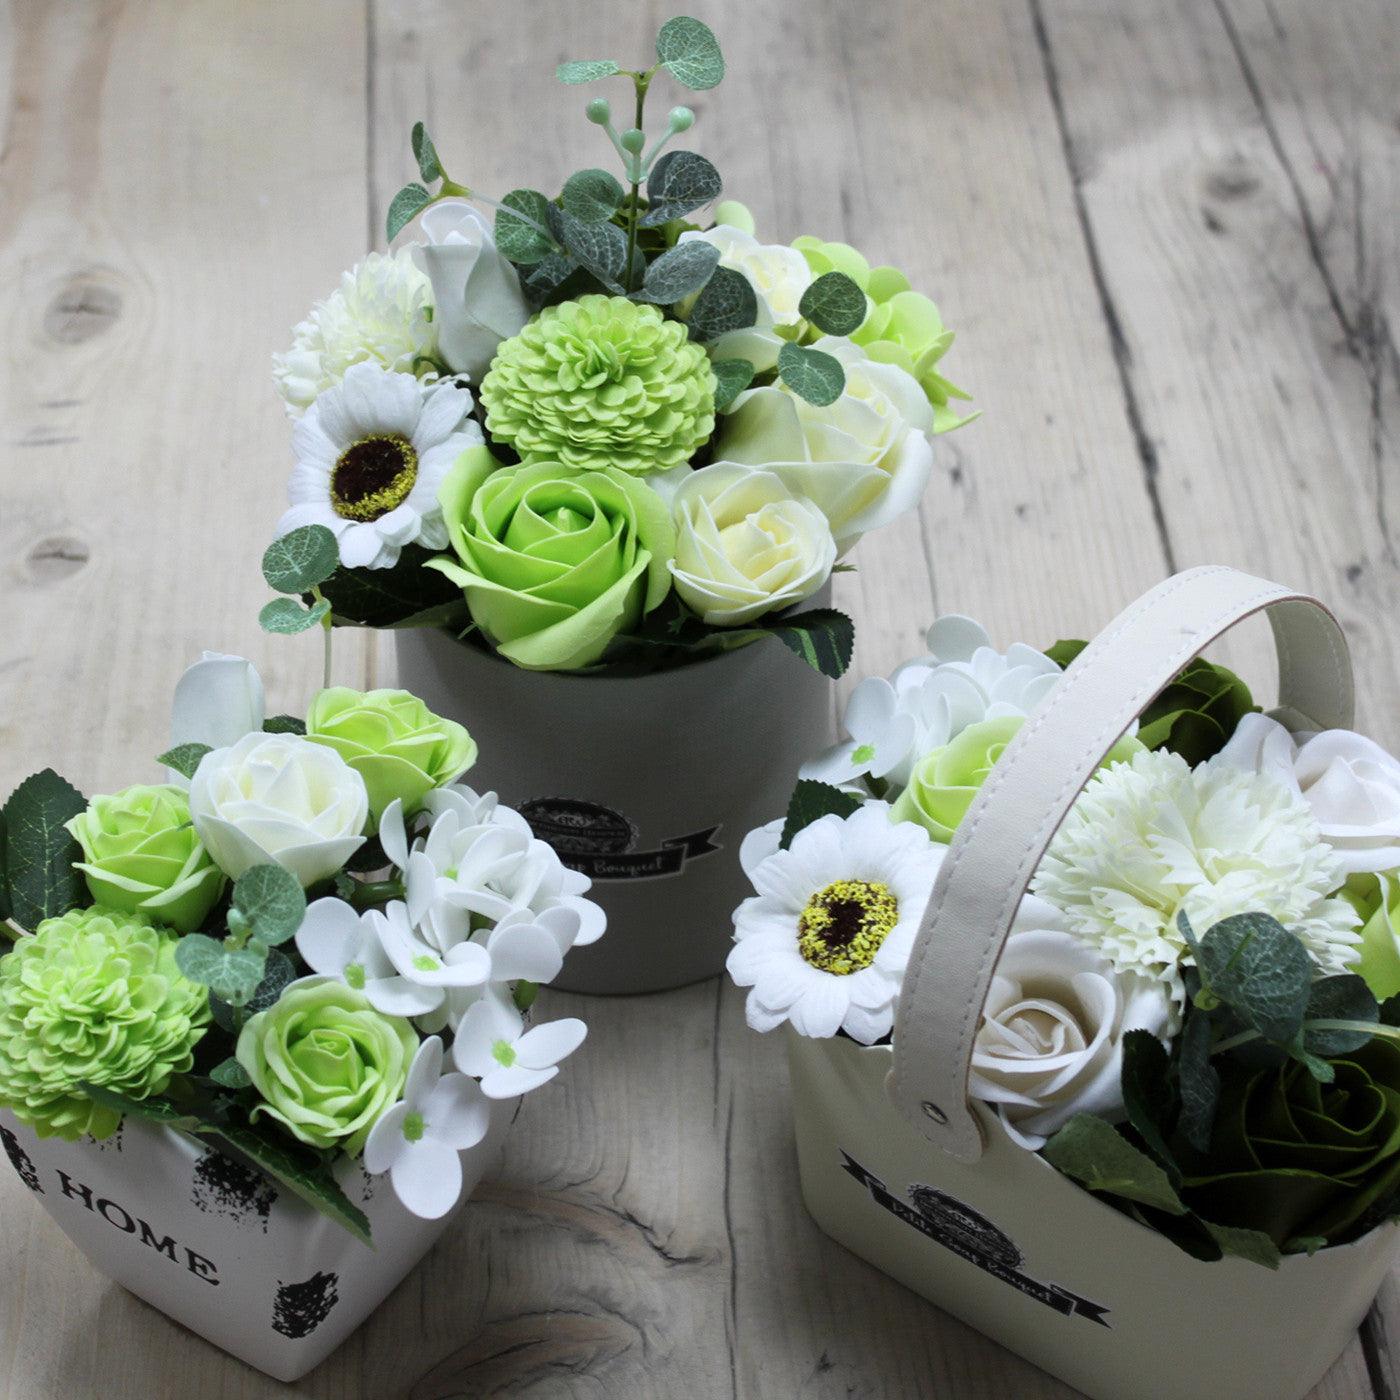 Soap Bouquet Petite Flower Pot - Pastel Green - Charming Spaces